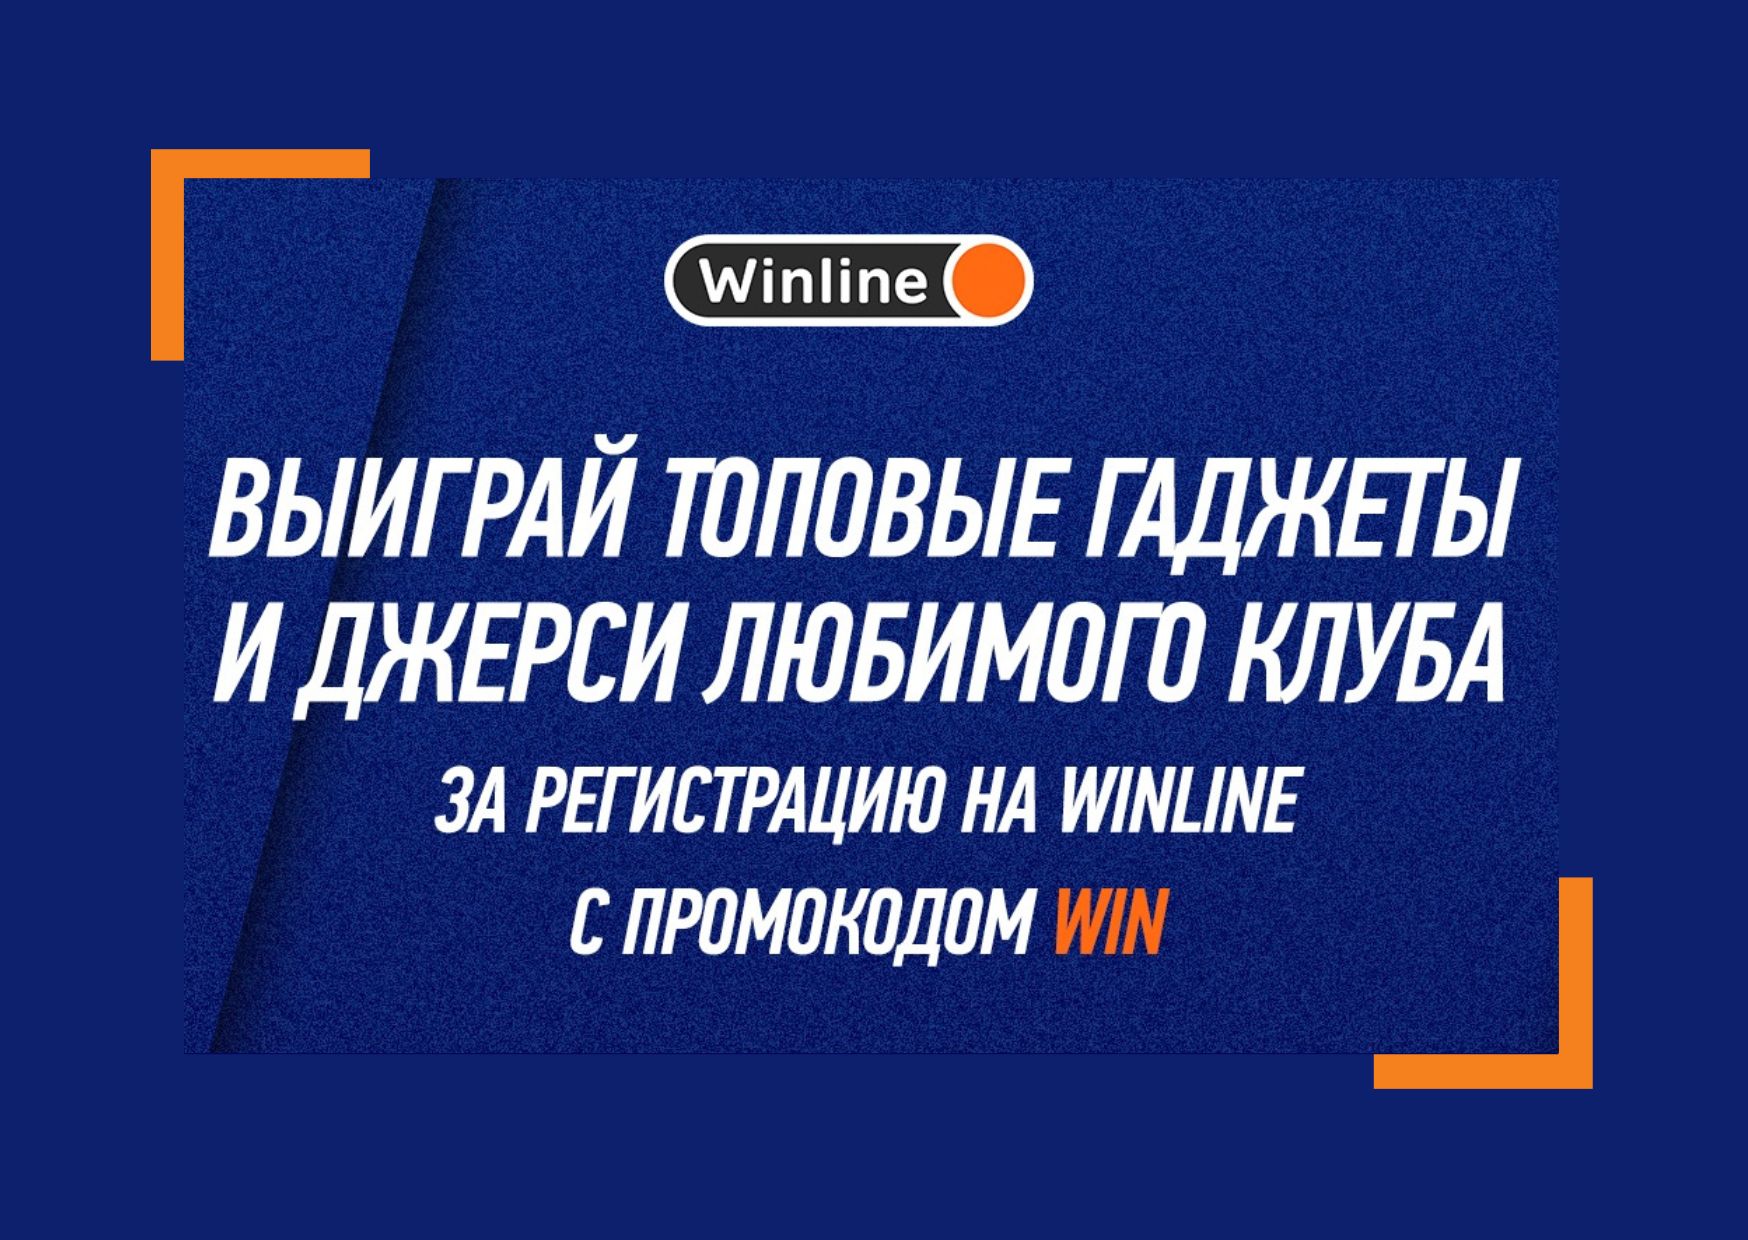 Winline с промокодом WIN